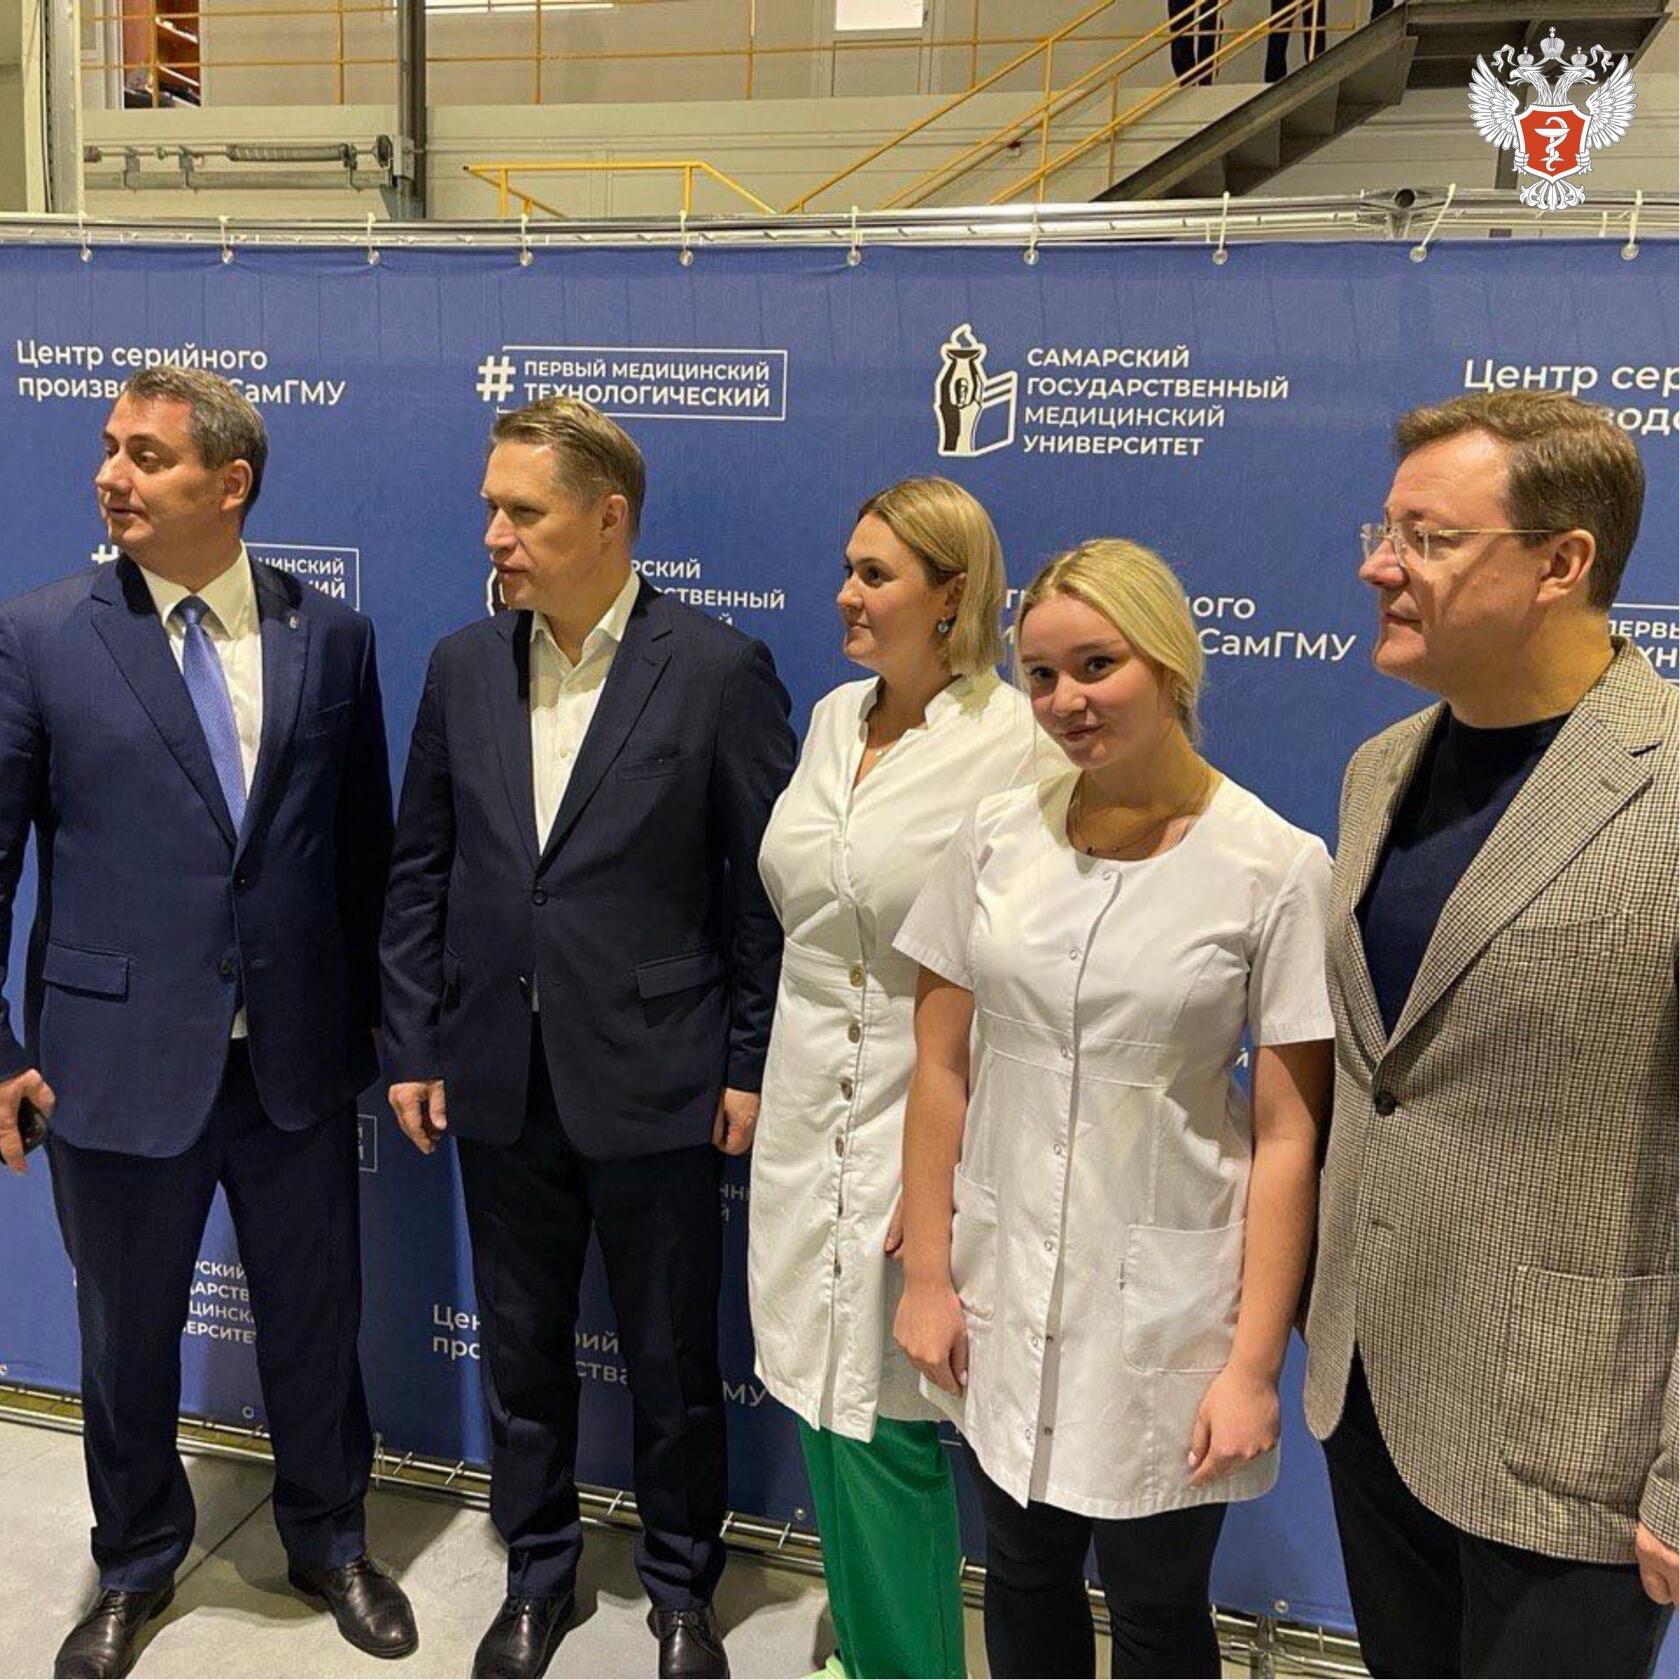 Михаил Мурашко дал старт серийному производству инновационной медицинской продукции в Самаре